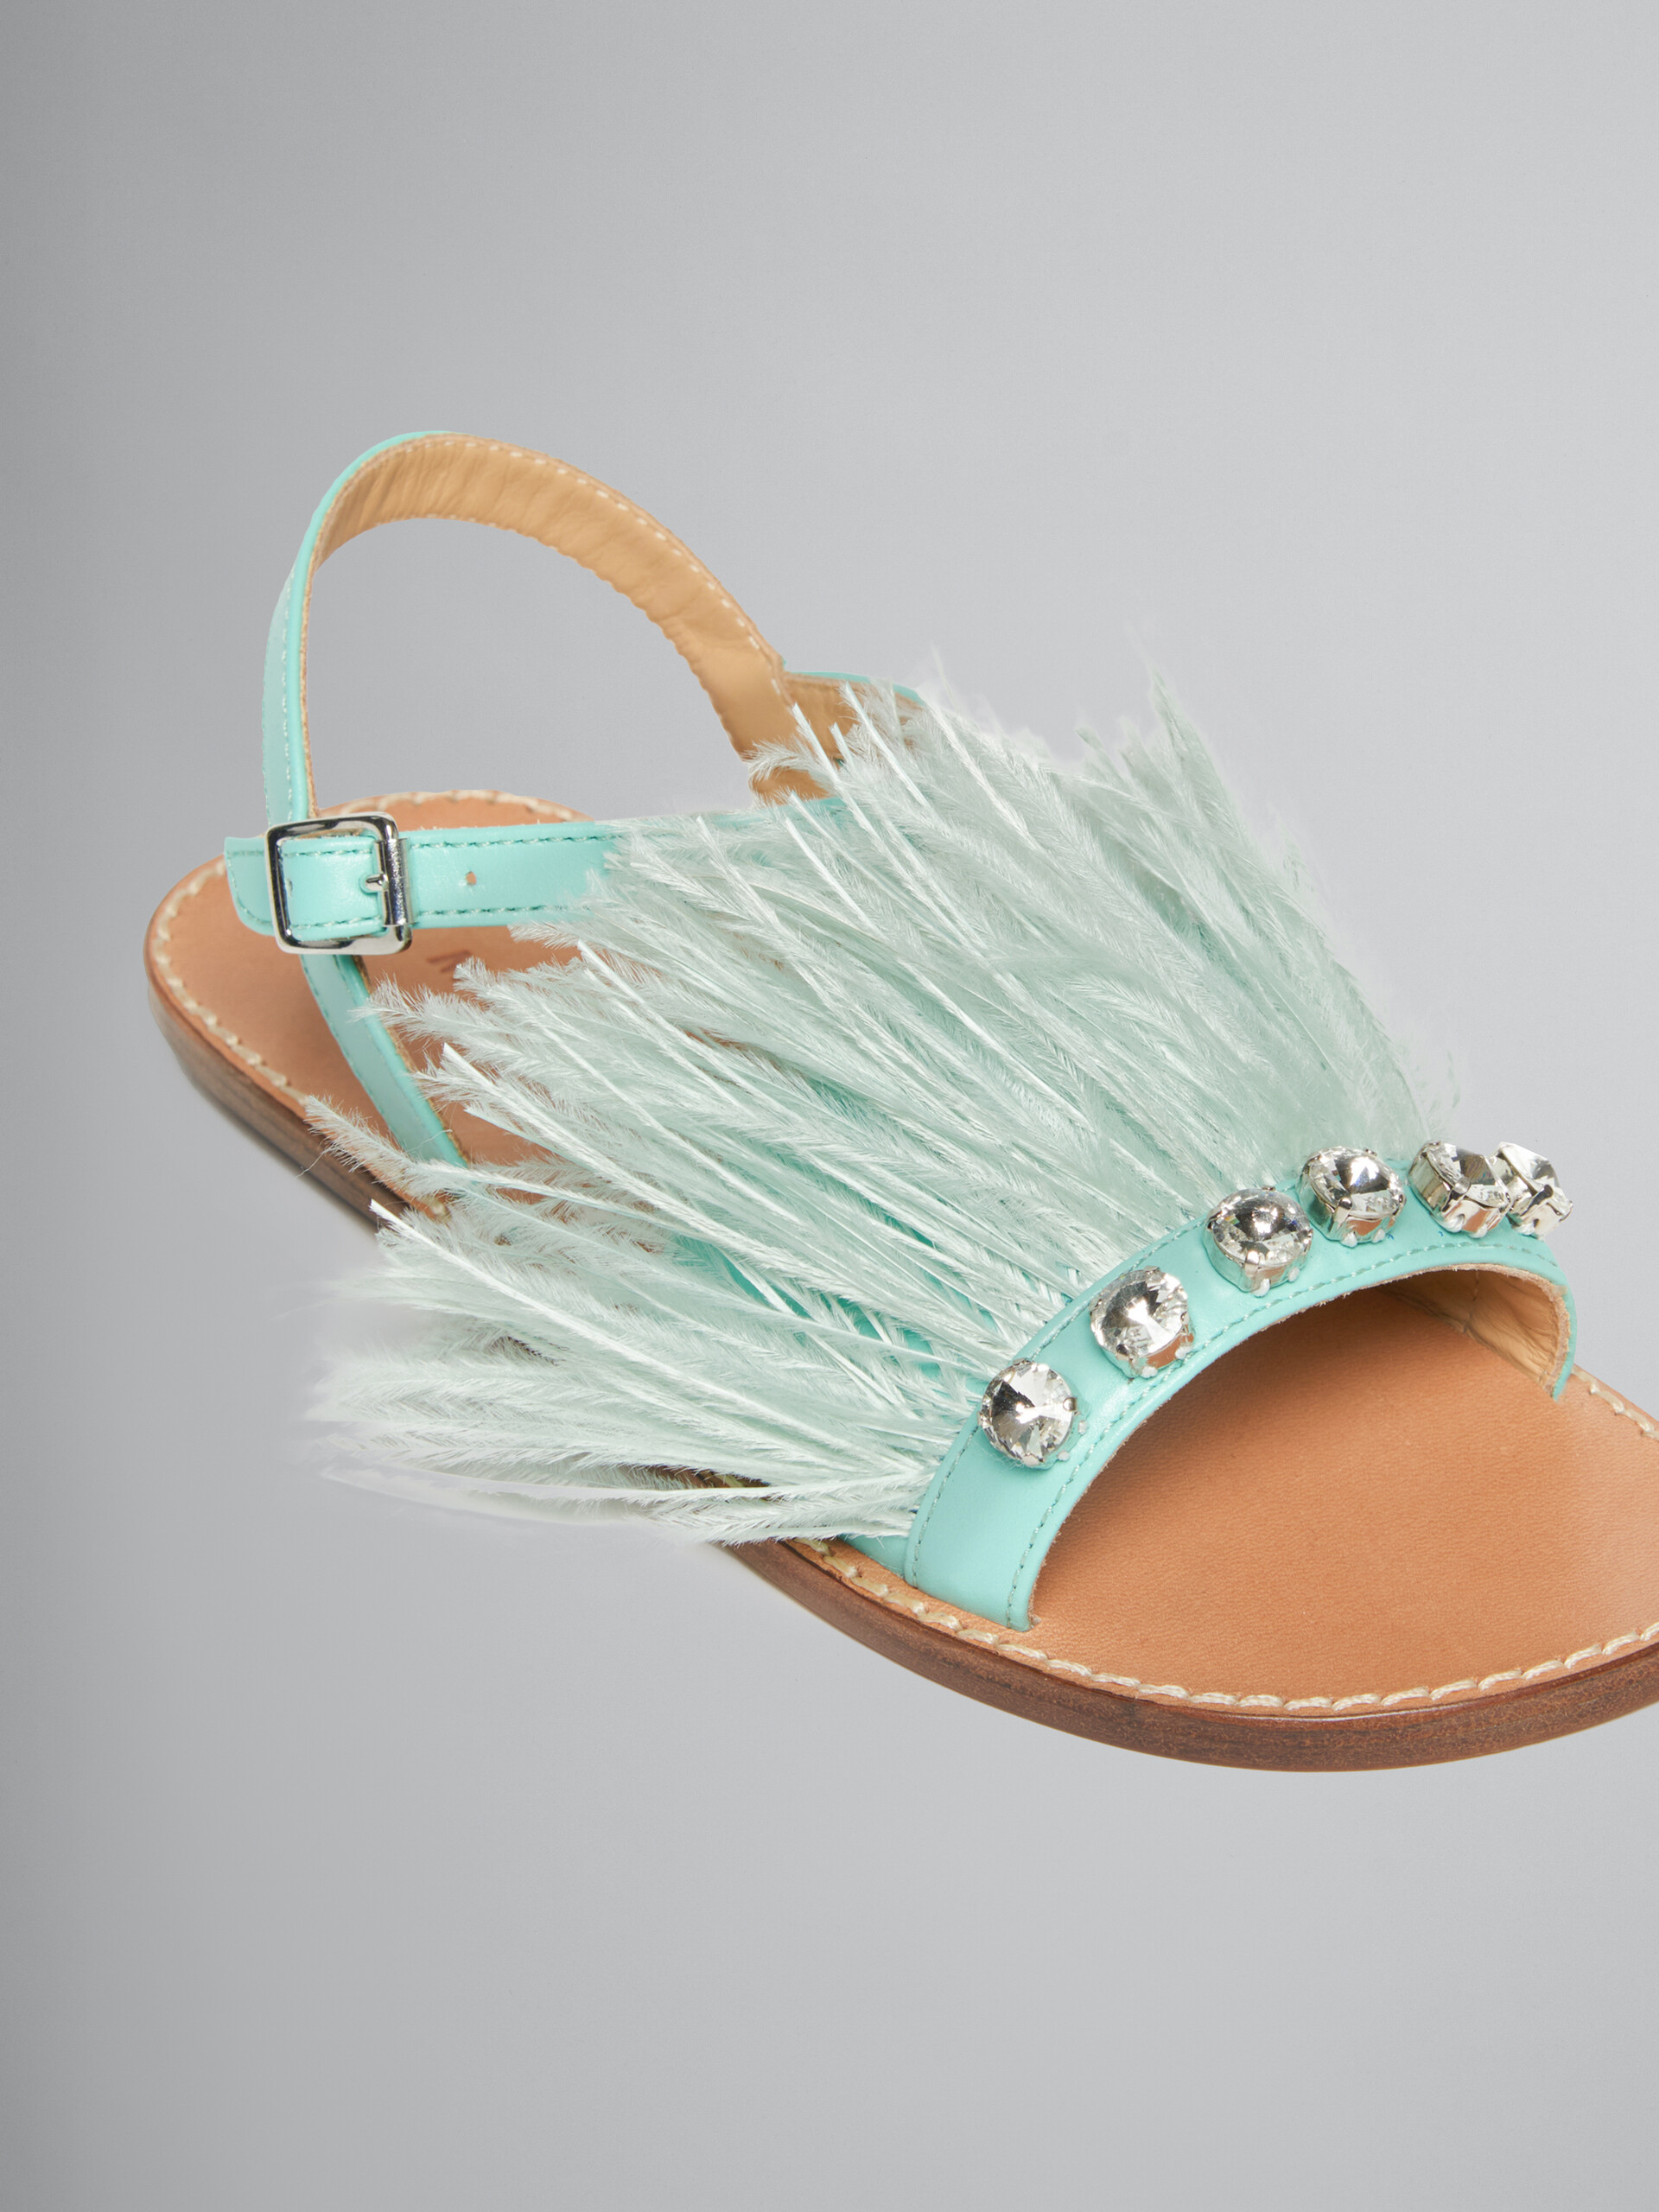 Sandales Marabou à plume turquoise - ENFANT - Image 4